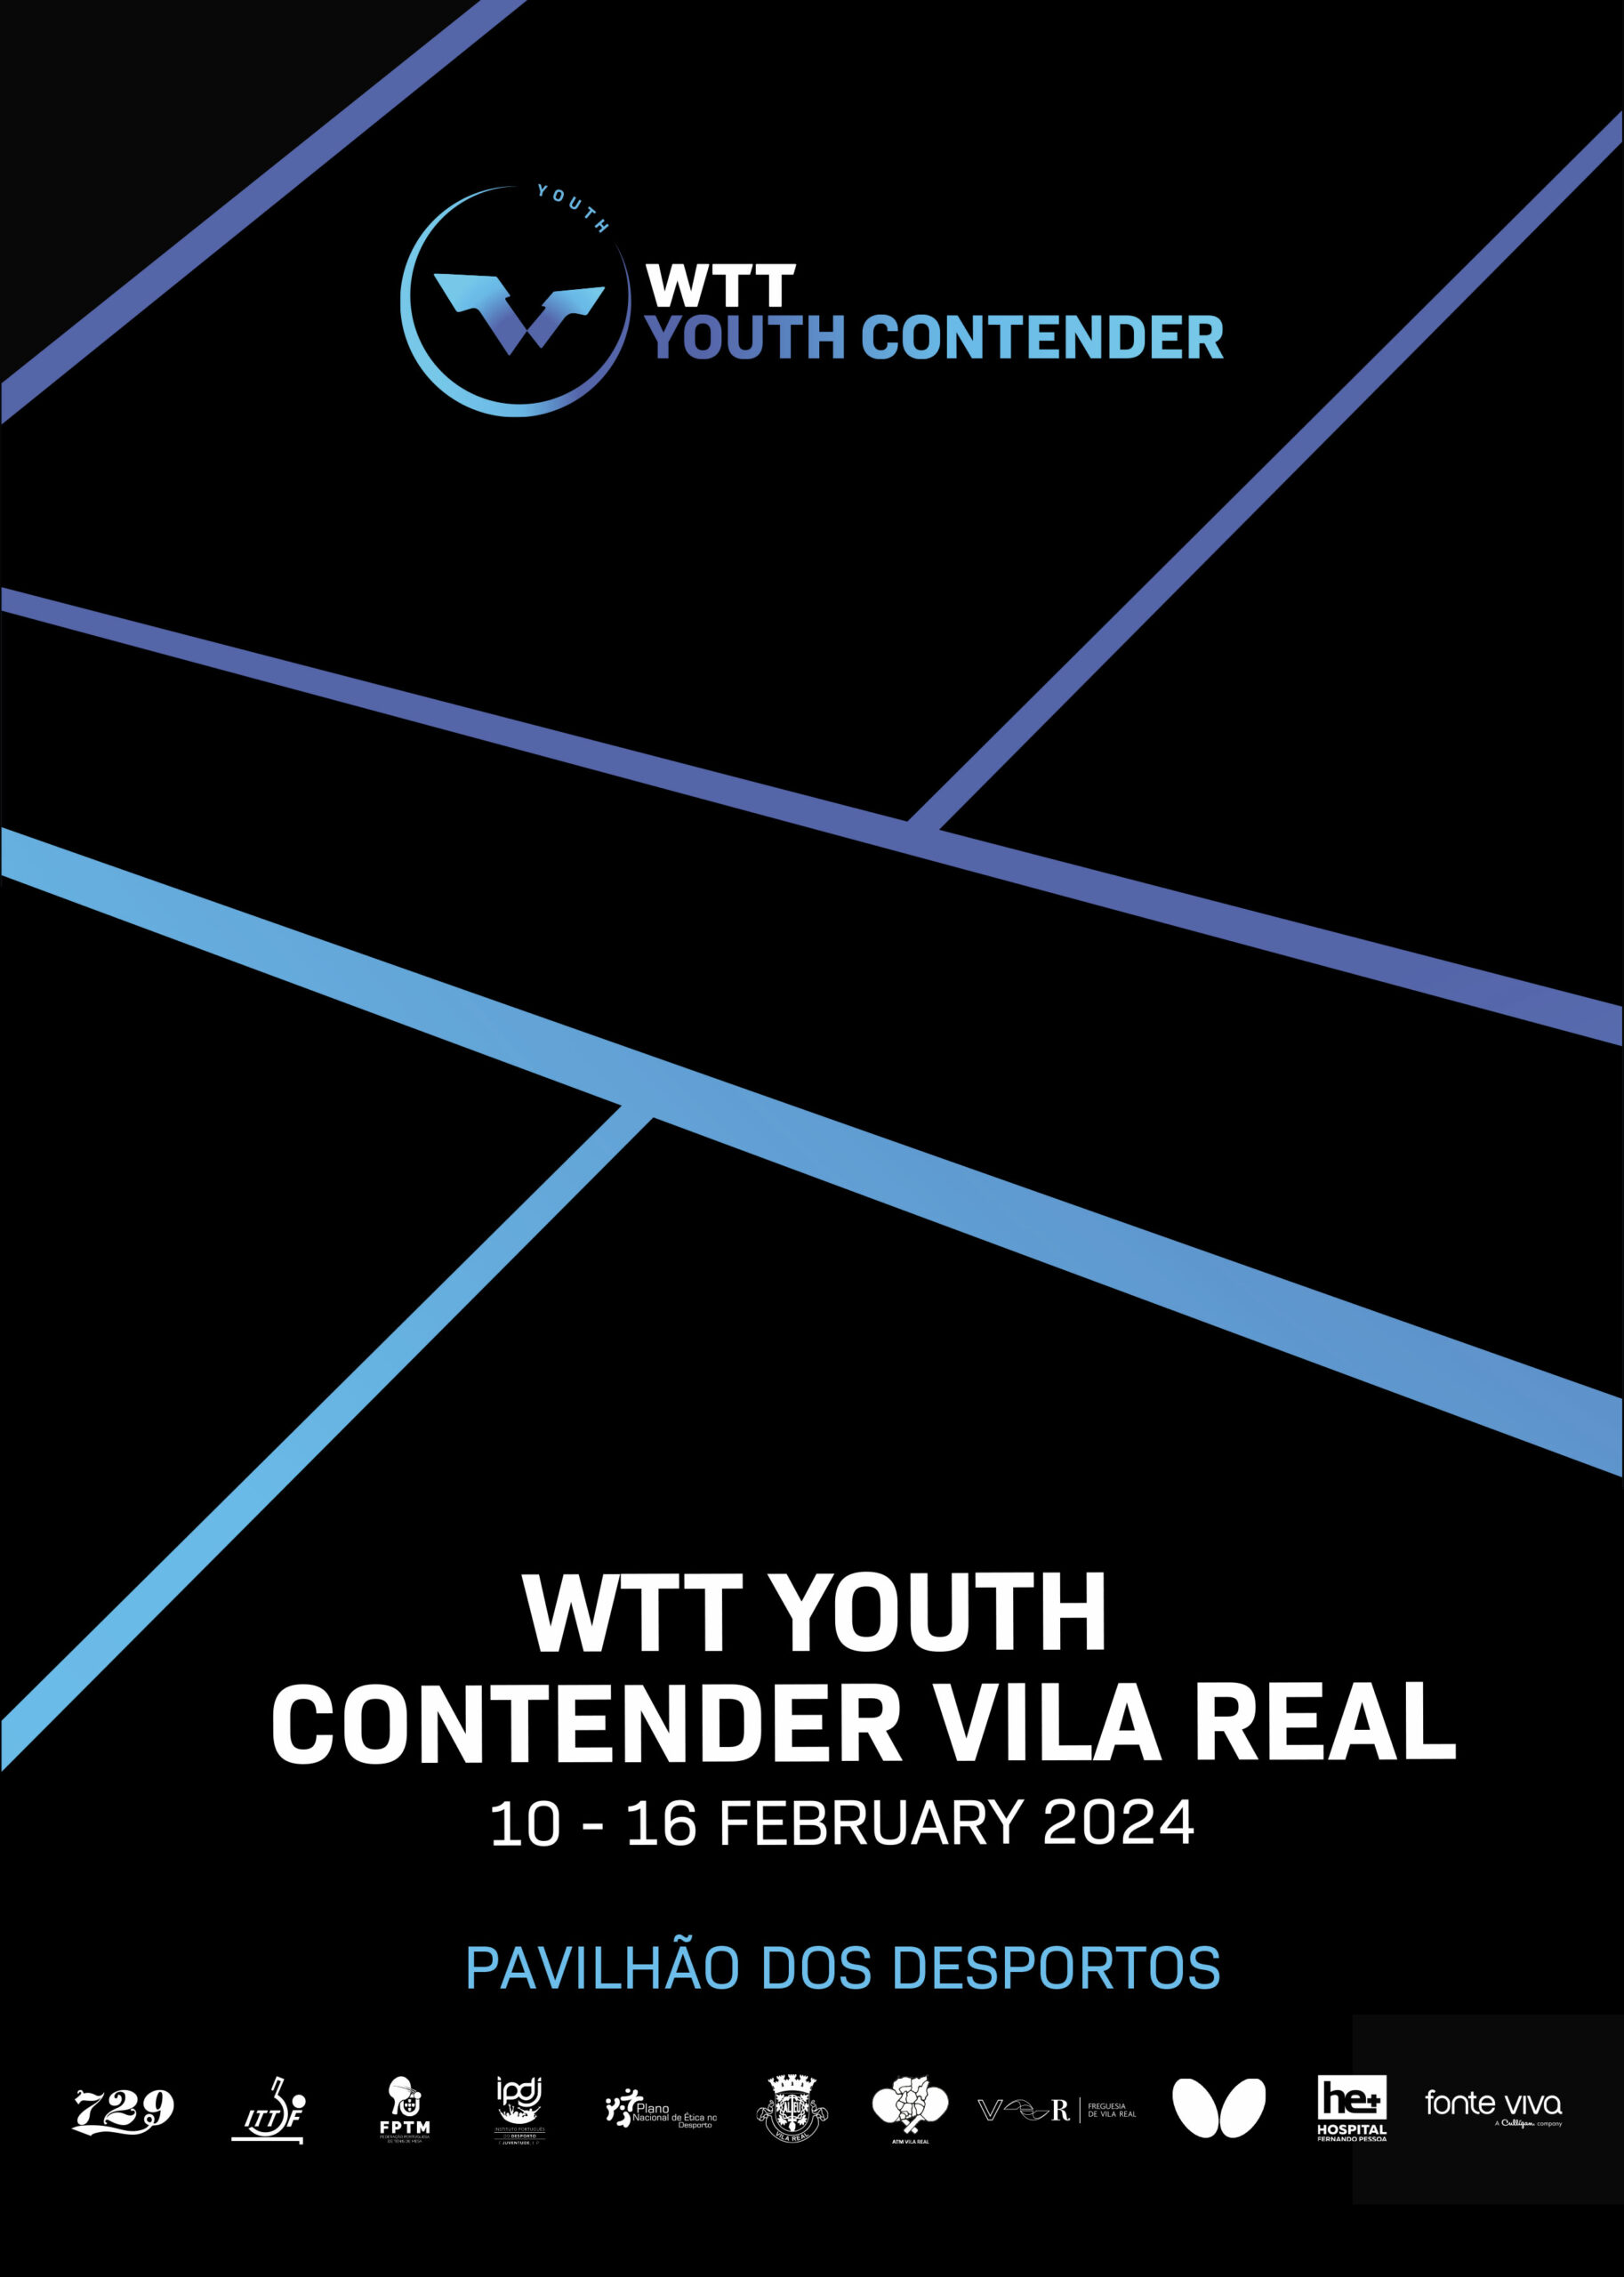 cartaz WTT Youth Contender Vila Real 10 a 16 fev. 24